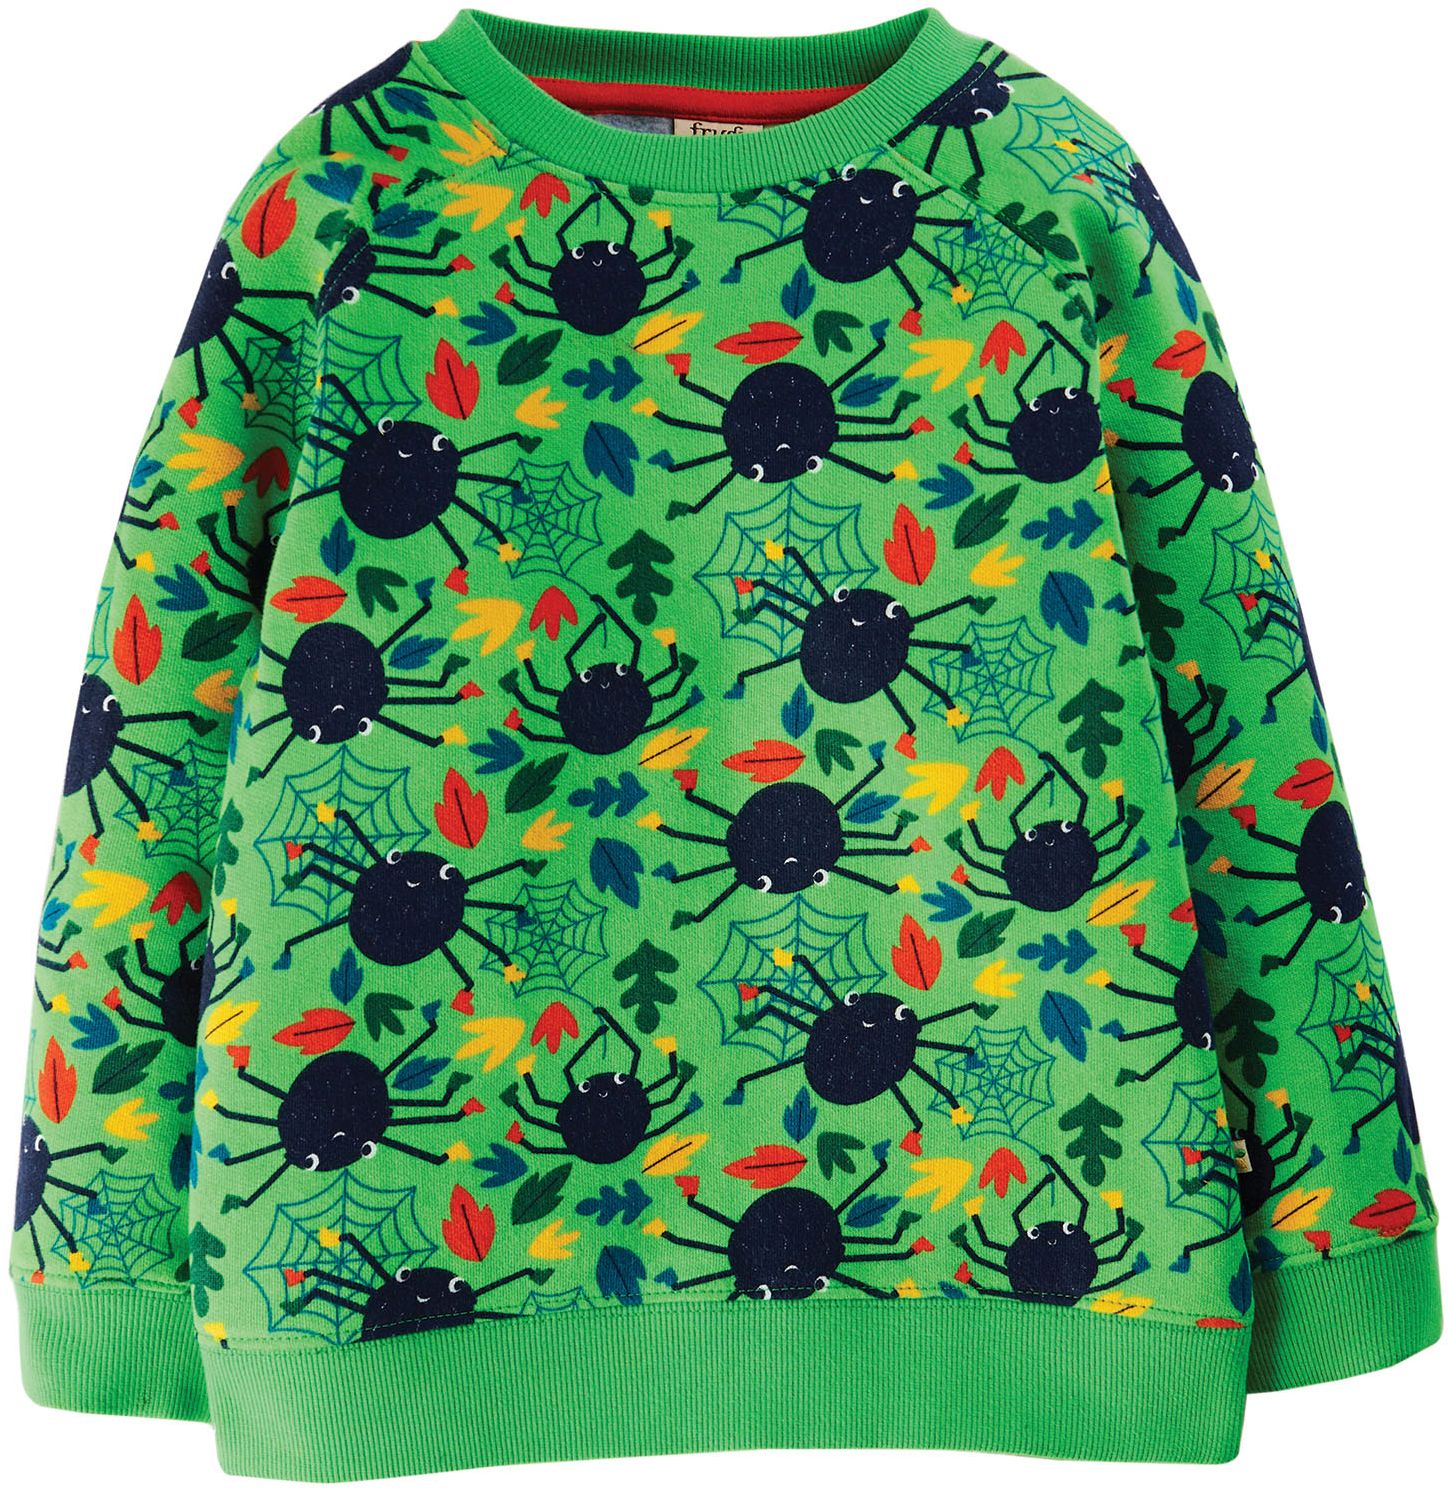 Kinder-Pullover mit Spinnen-Print